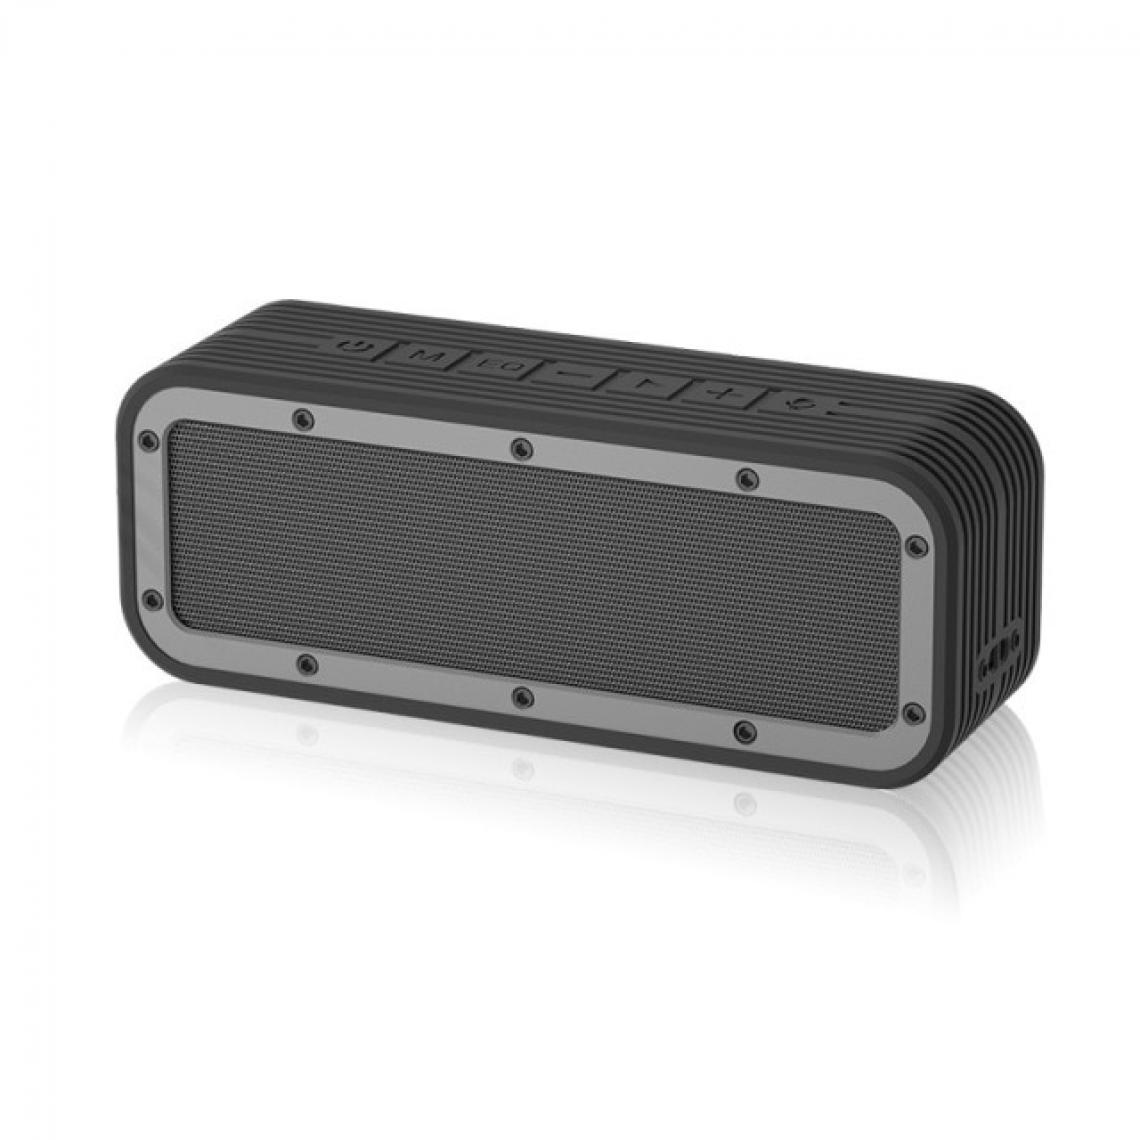 Universal - Haut-parleur portable noir IPX7 Haut-parleur Bluetooth sans fil étanche Puissant Boîte à bras haut Subwoofer auxiliaire extérieur Haut-Parleur stéréo - Hauts-parleurs